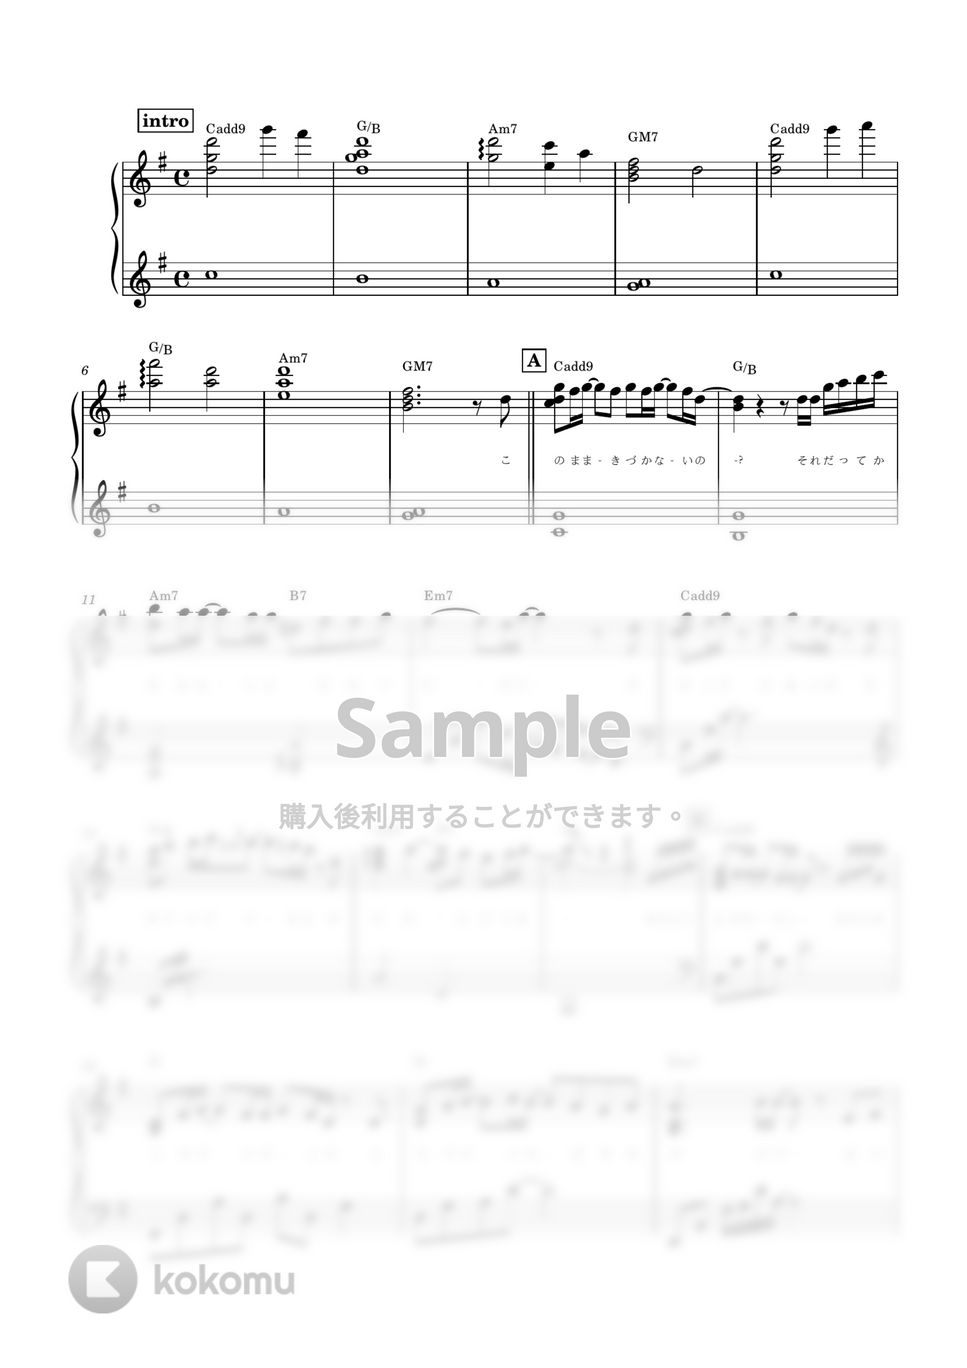 赤髪 - 黒猫 (ピアノソロ / 中上級 / 歌詞・コードあり / ボカロ) by ena